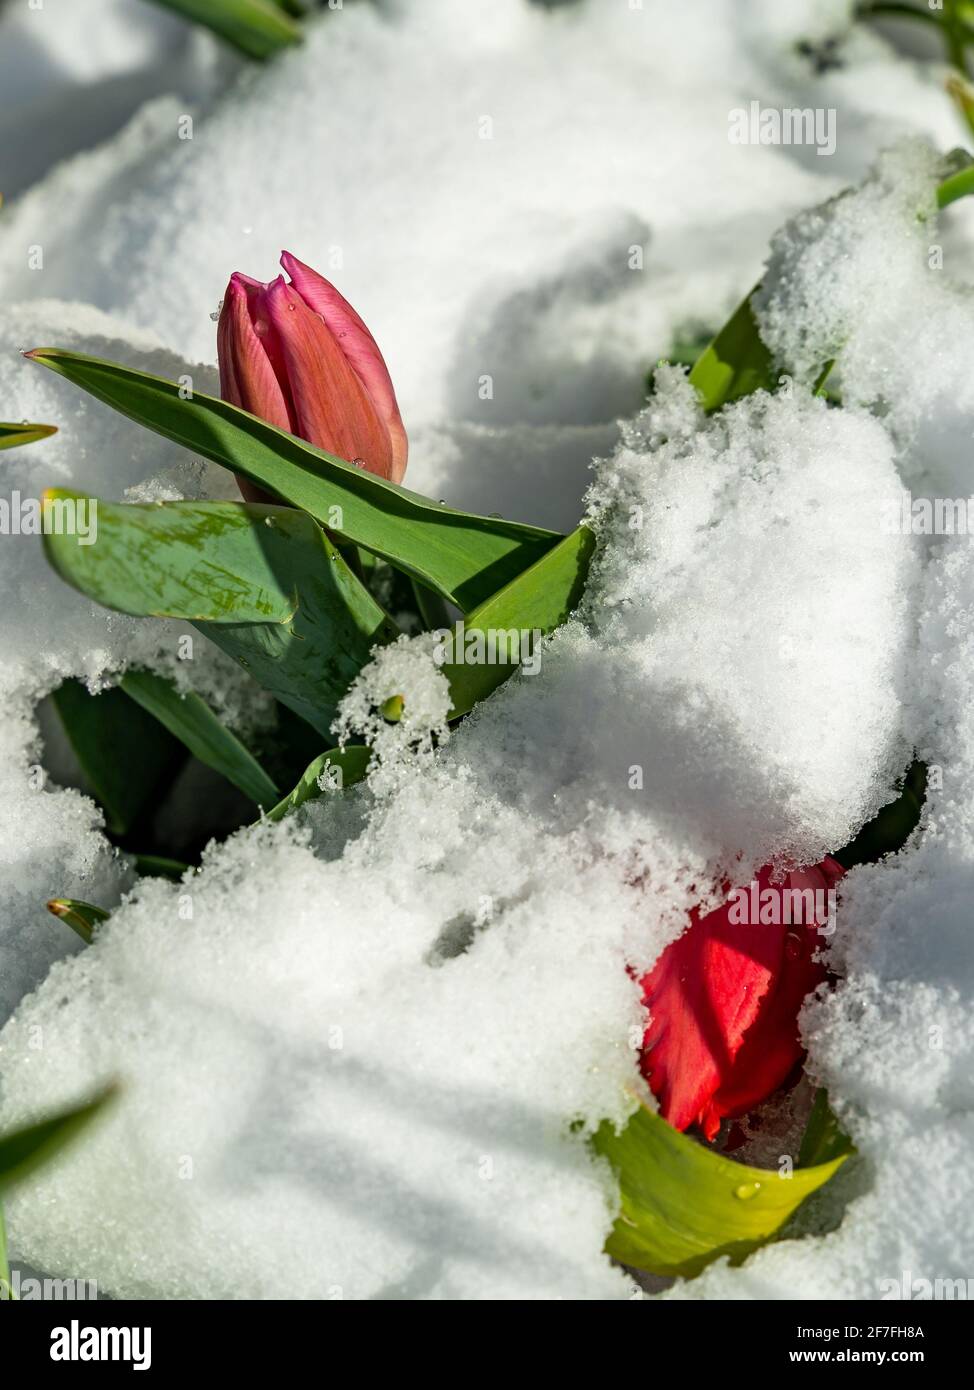 Frühling tulipen wurden im nochmals eingeschneit. Nieve en tulipanes rojos en primavera. El hermoso jardín con flores cubiertas de nieve en semana santa Foto de stock